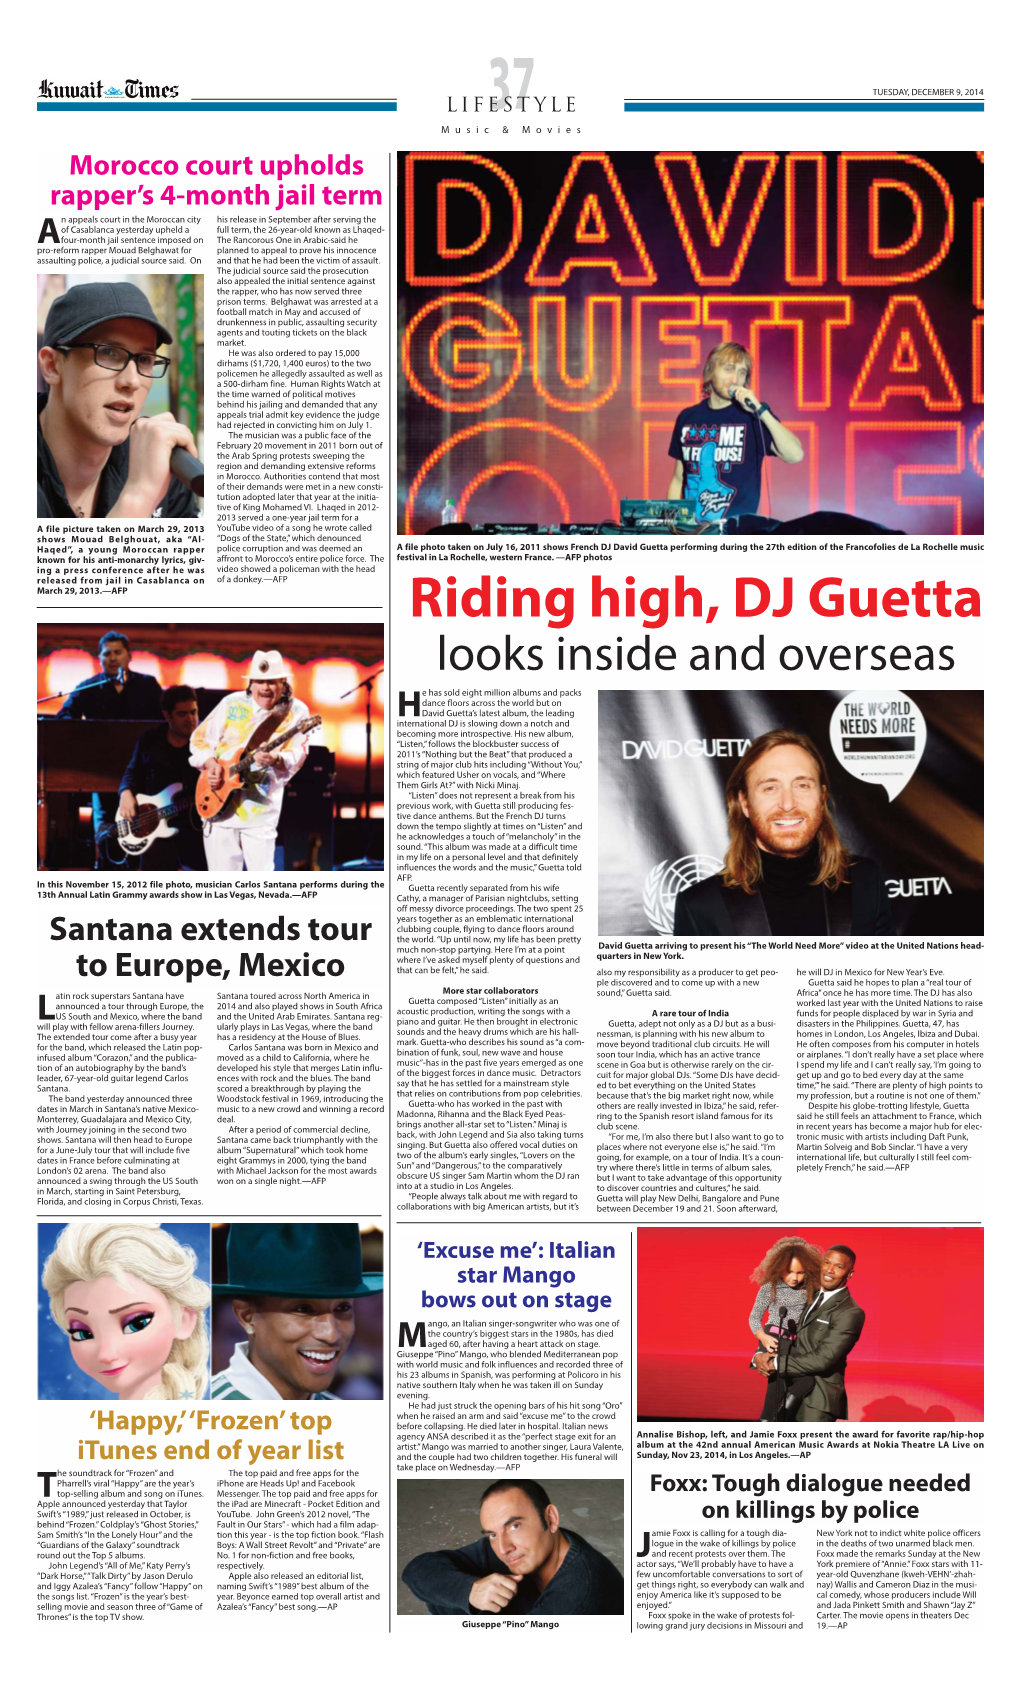 Riding High, DJ Guetta